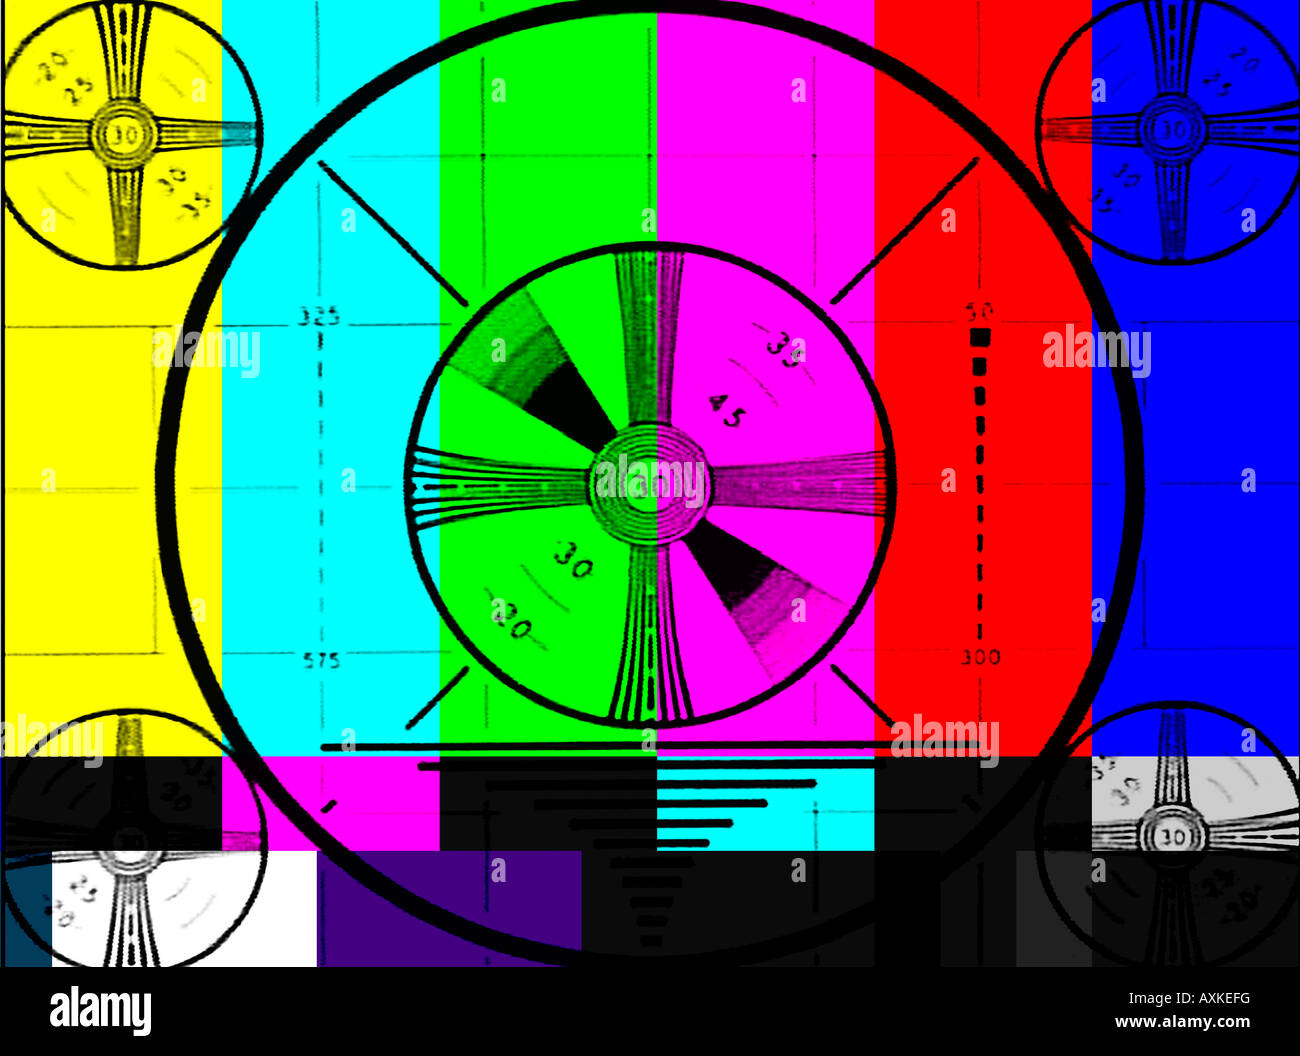 Color Tv Test Pattern